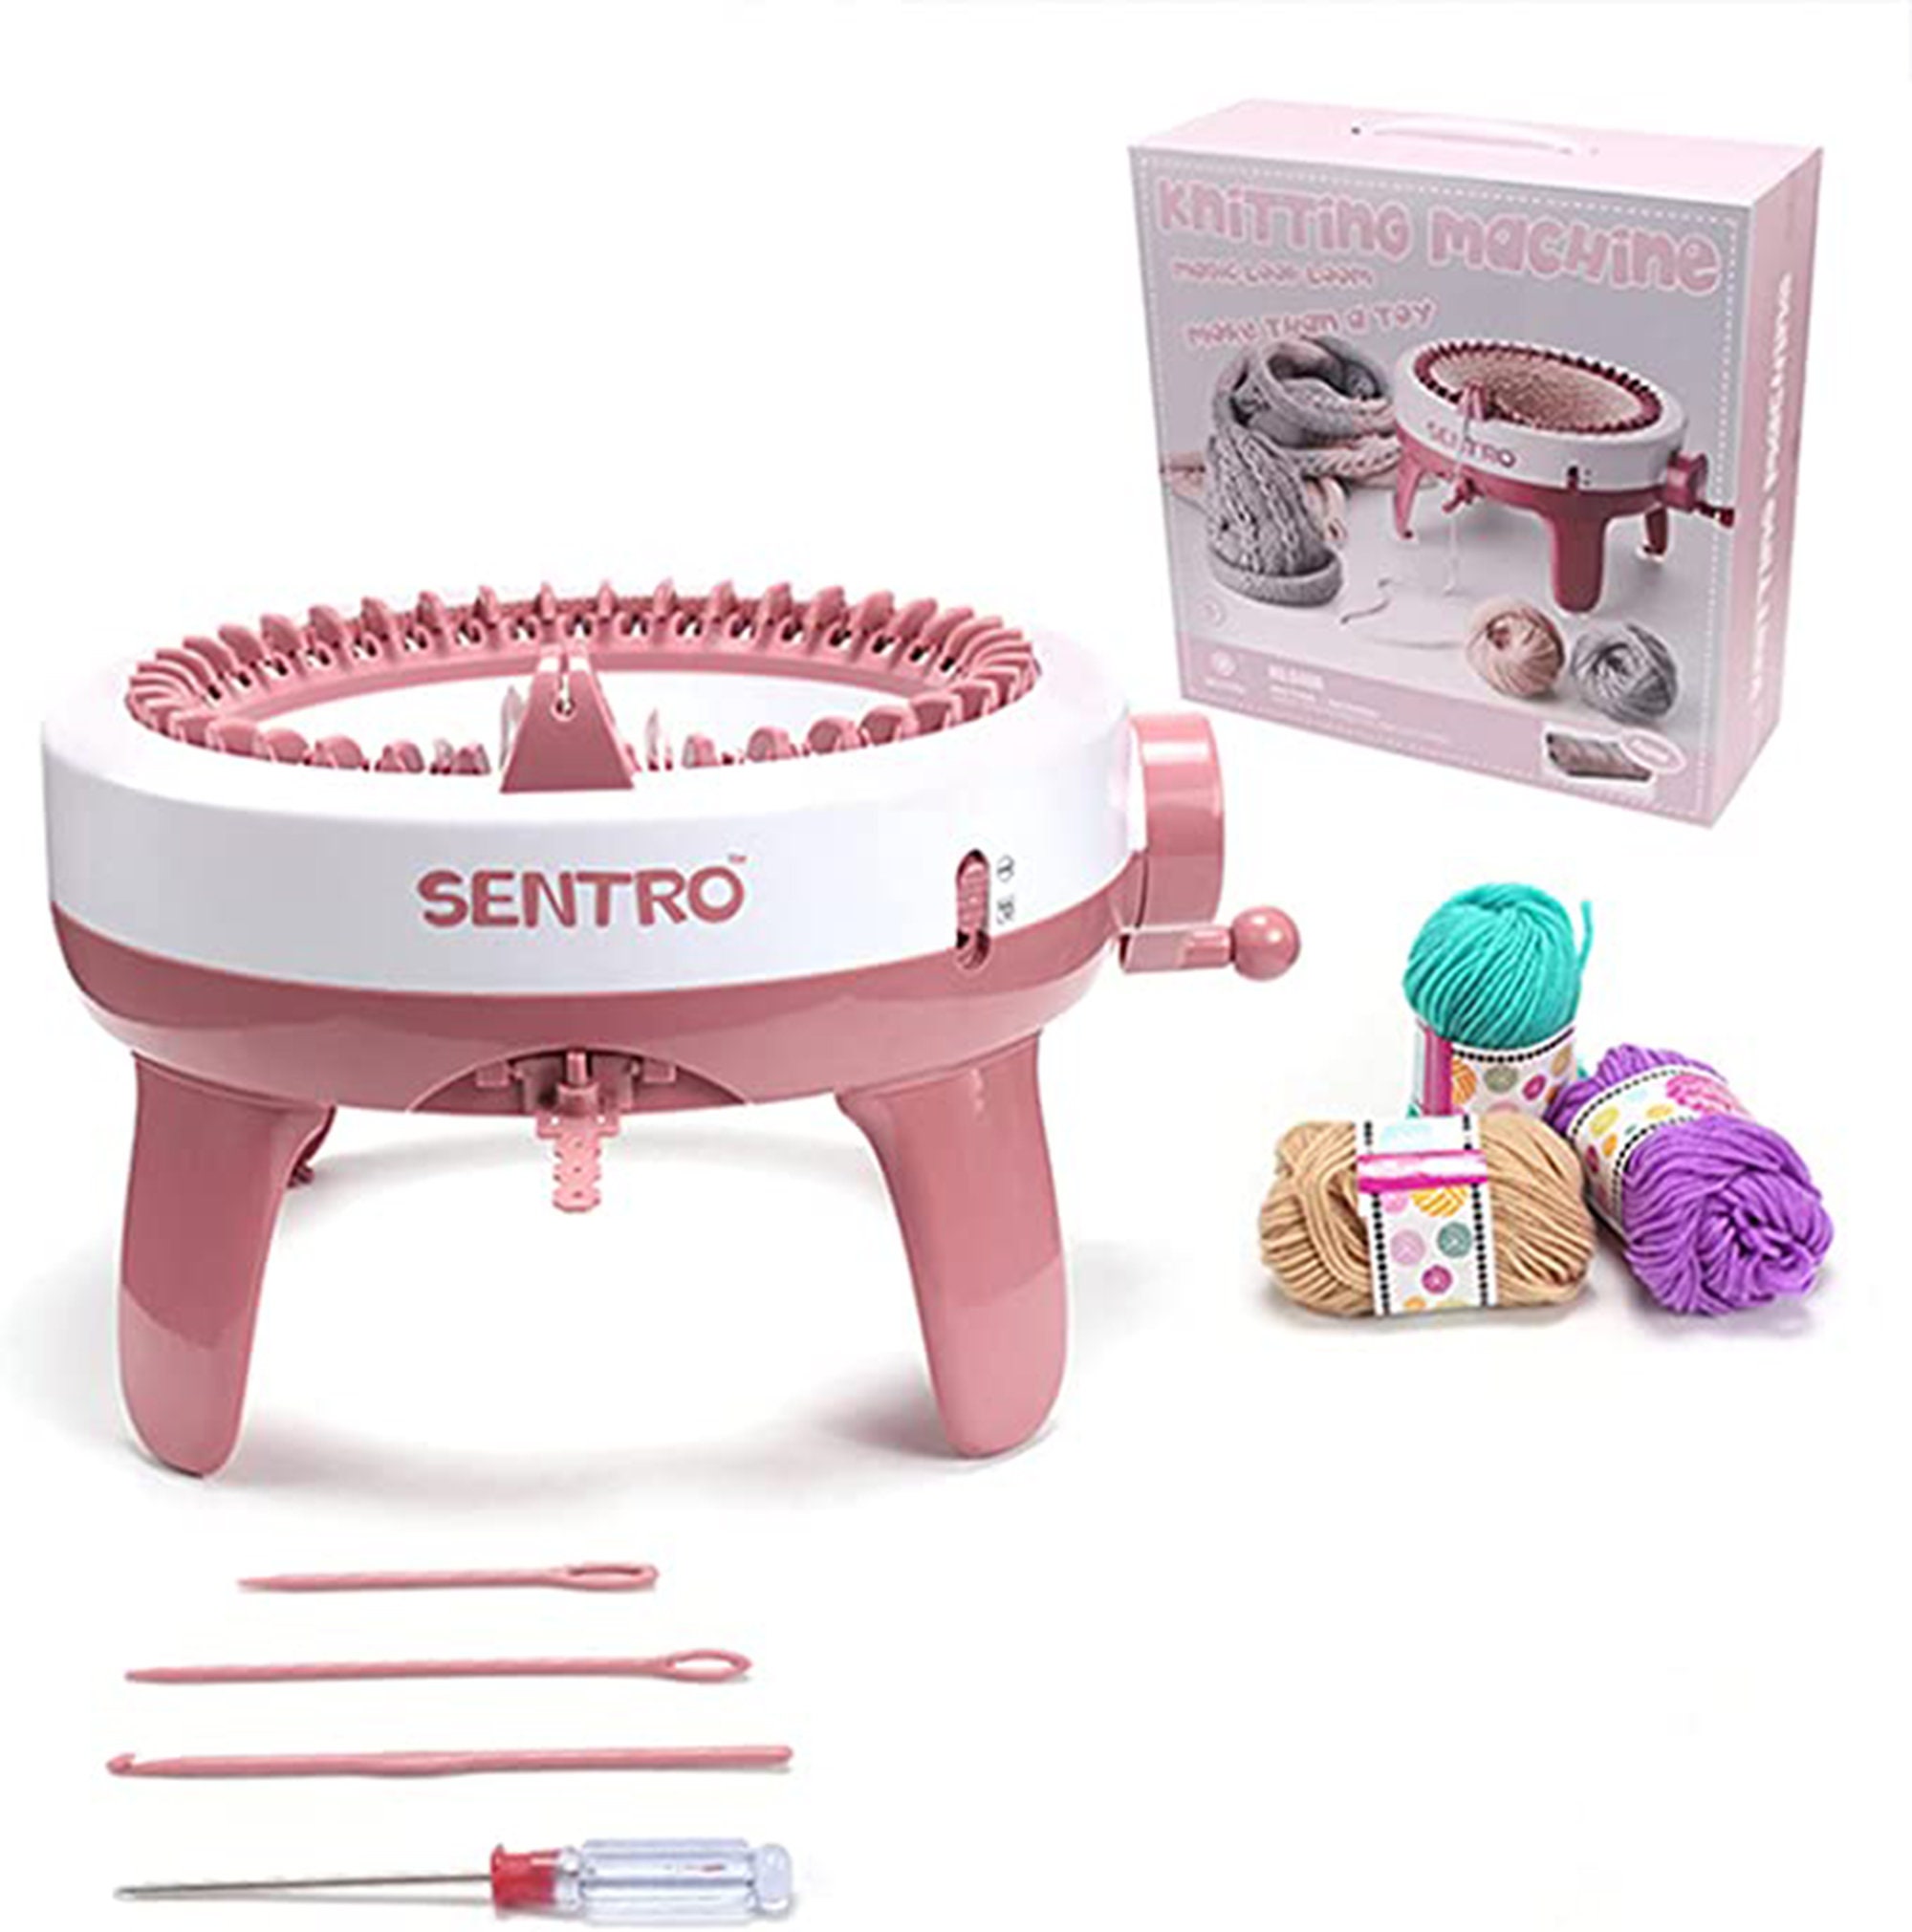 The Sentro 40 Knitting Machine - Etsy